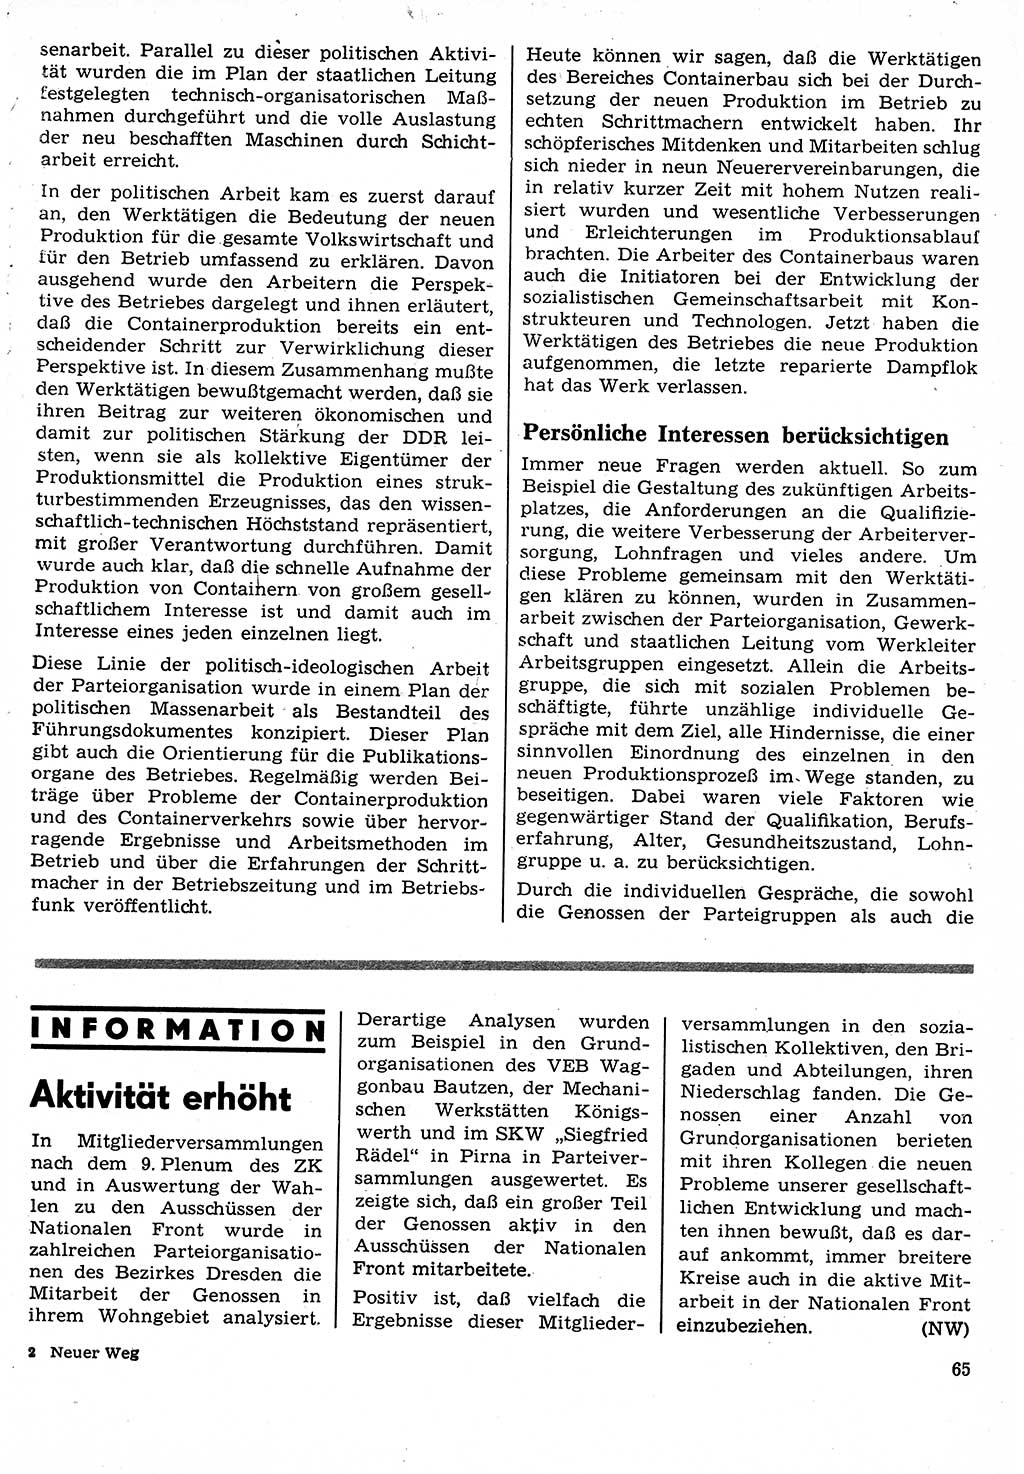 Neuer Weg (NW), Organ des Zentralkomitees (ZK) der SED (Sozialistische Einheitspartei Deutschlands) für Fragen des Parteilebens, 24. Jahrgang [Deutsche Demokratische Republik (DDR)] 1969, Seite 65 (NW ZK SED DDR 1969, S. 65)